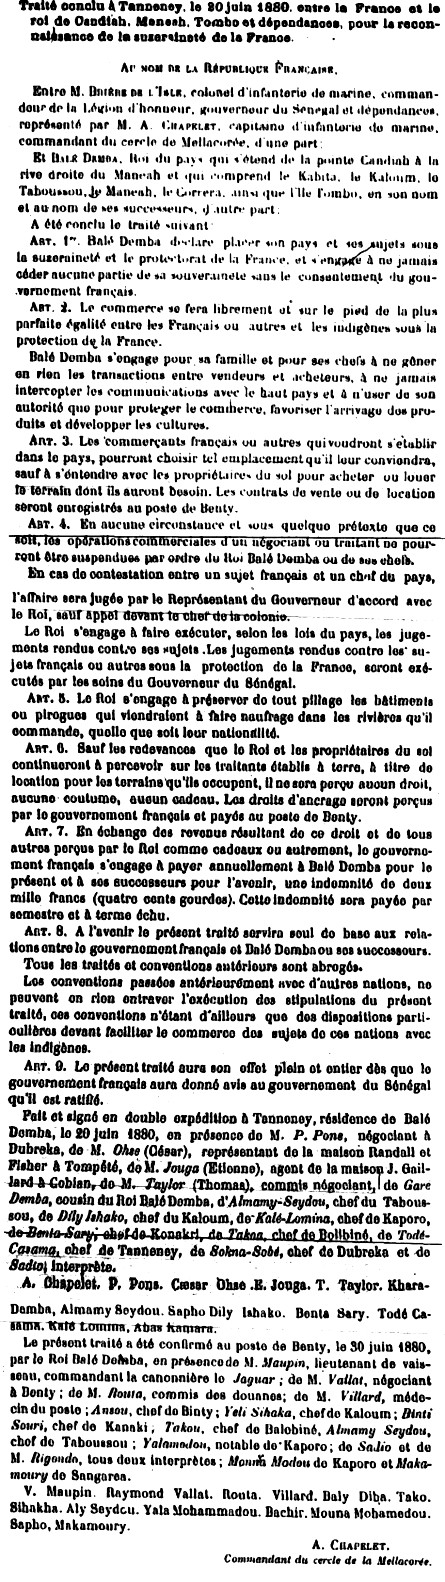  Traité conclu à Tanneney, le 20 juin 1880, entre la France et le Roi de Candiah, Maneah,Tombo et dépendances, pour la reconnaissanced el asuzeraineté de la France.